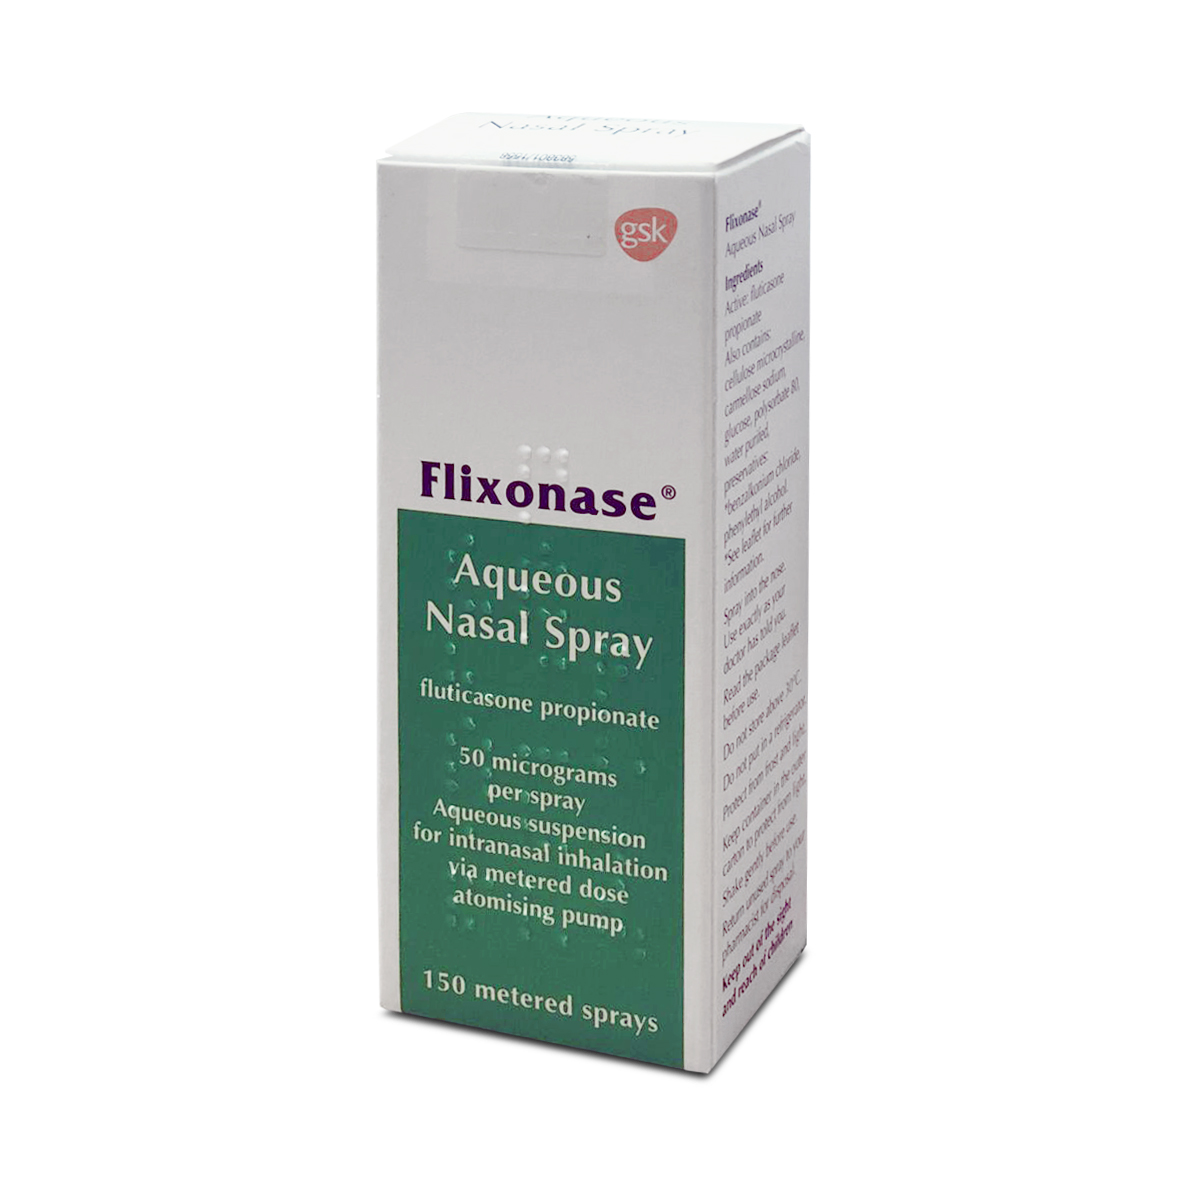 Flixonase Nasal Spray, manufactured by GlaxoSmithKline (GSK)